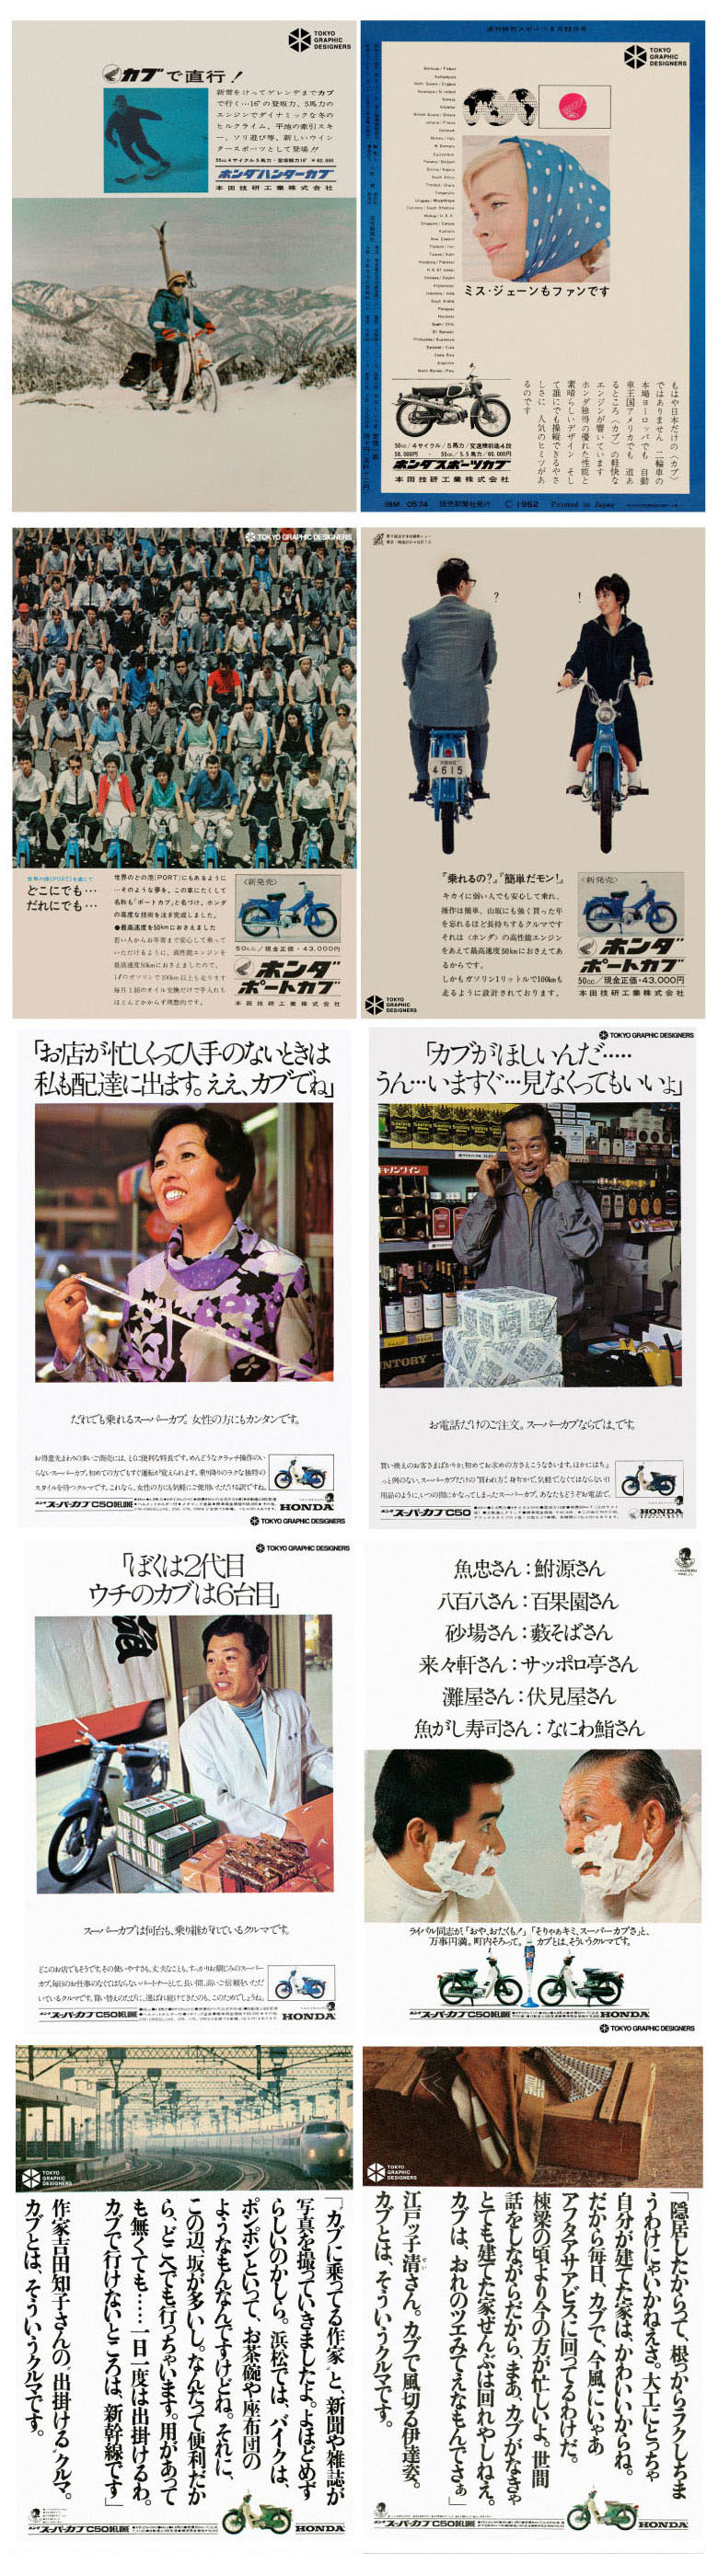 新聞・雑誌に見るスーパーカブの広告ヒストリー5-2